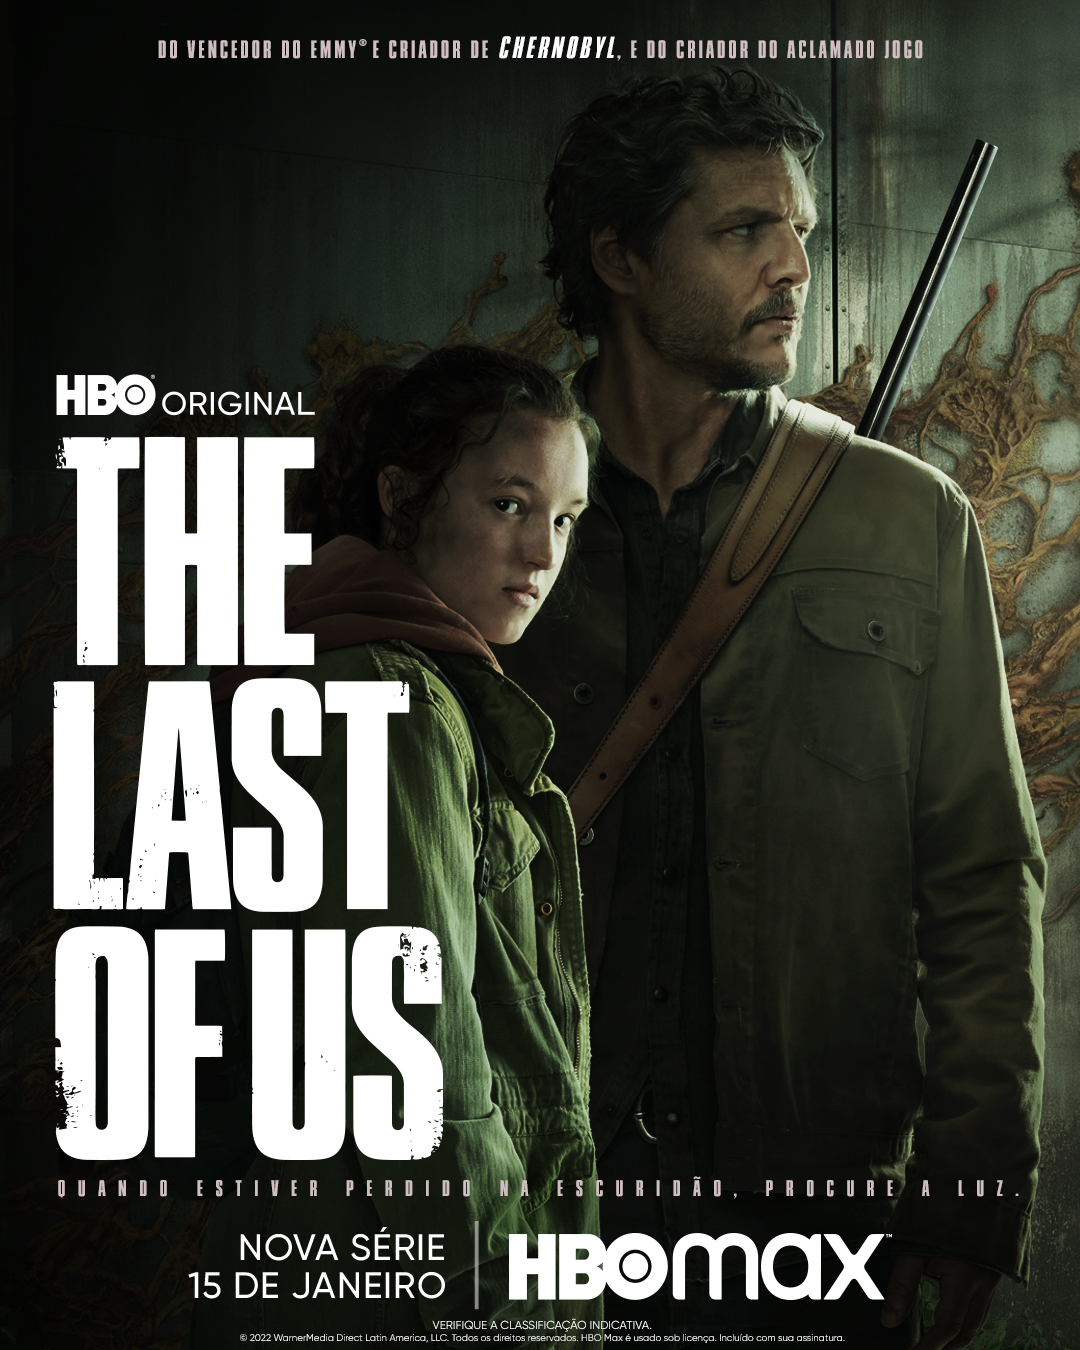 Onde e como assistir a série de The Last of Us